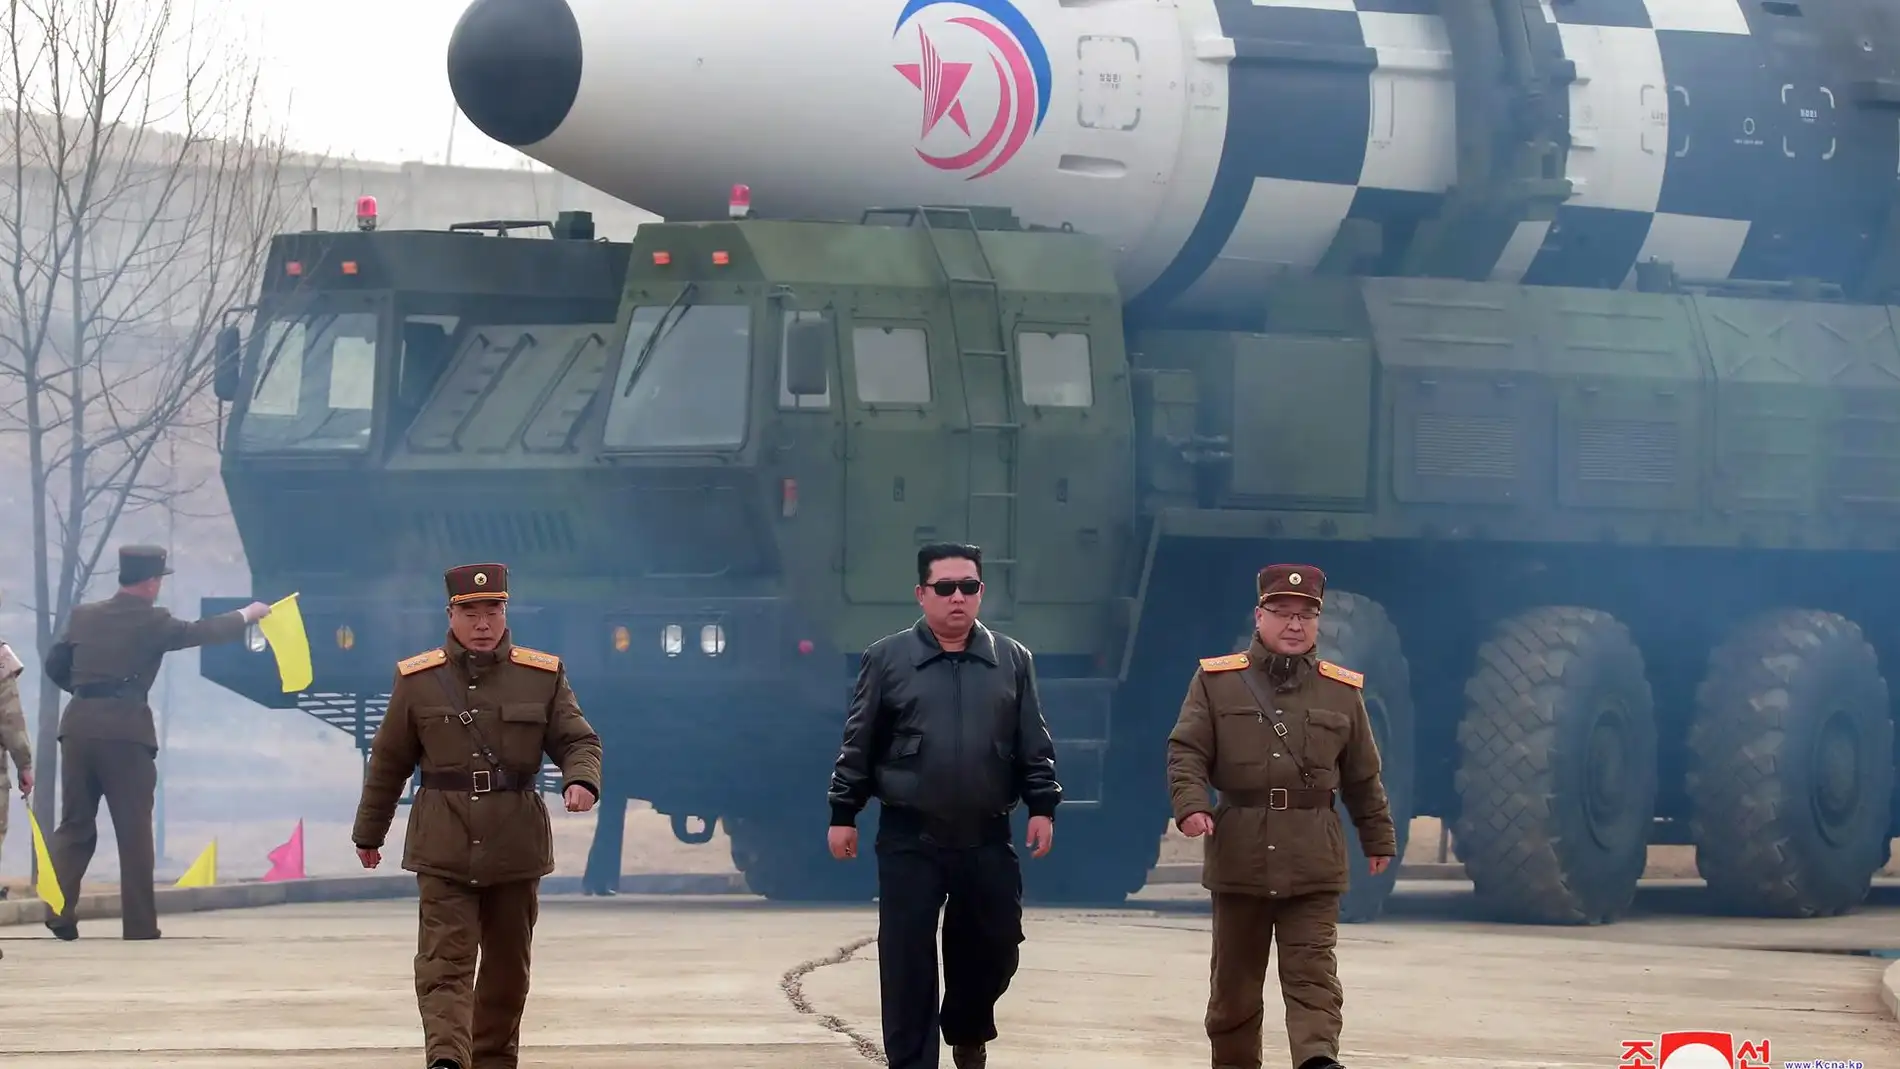 El surrealista vídeo Kim Jong-un en el lanzamiento del nuevo misil de Corea  del Norte | Onda Cero Radio